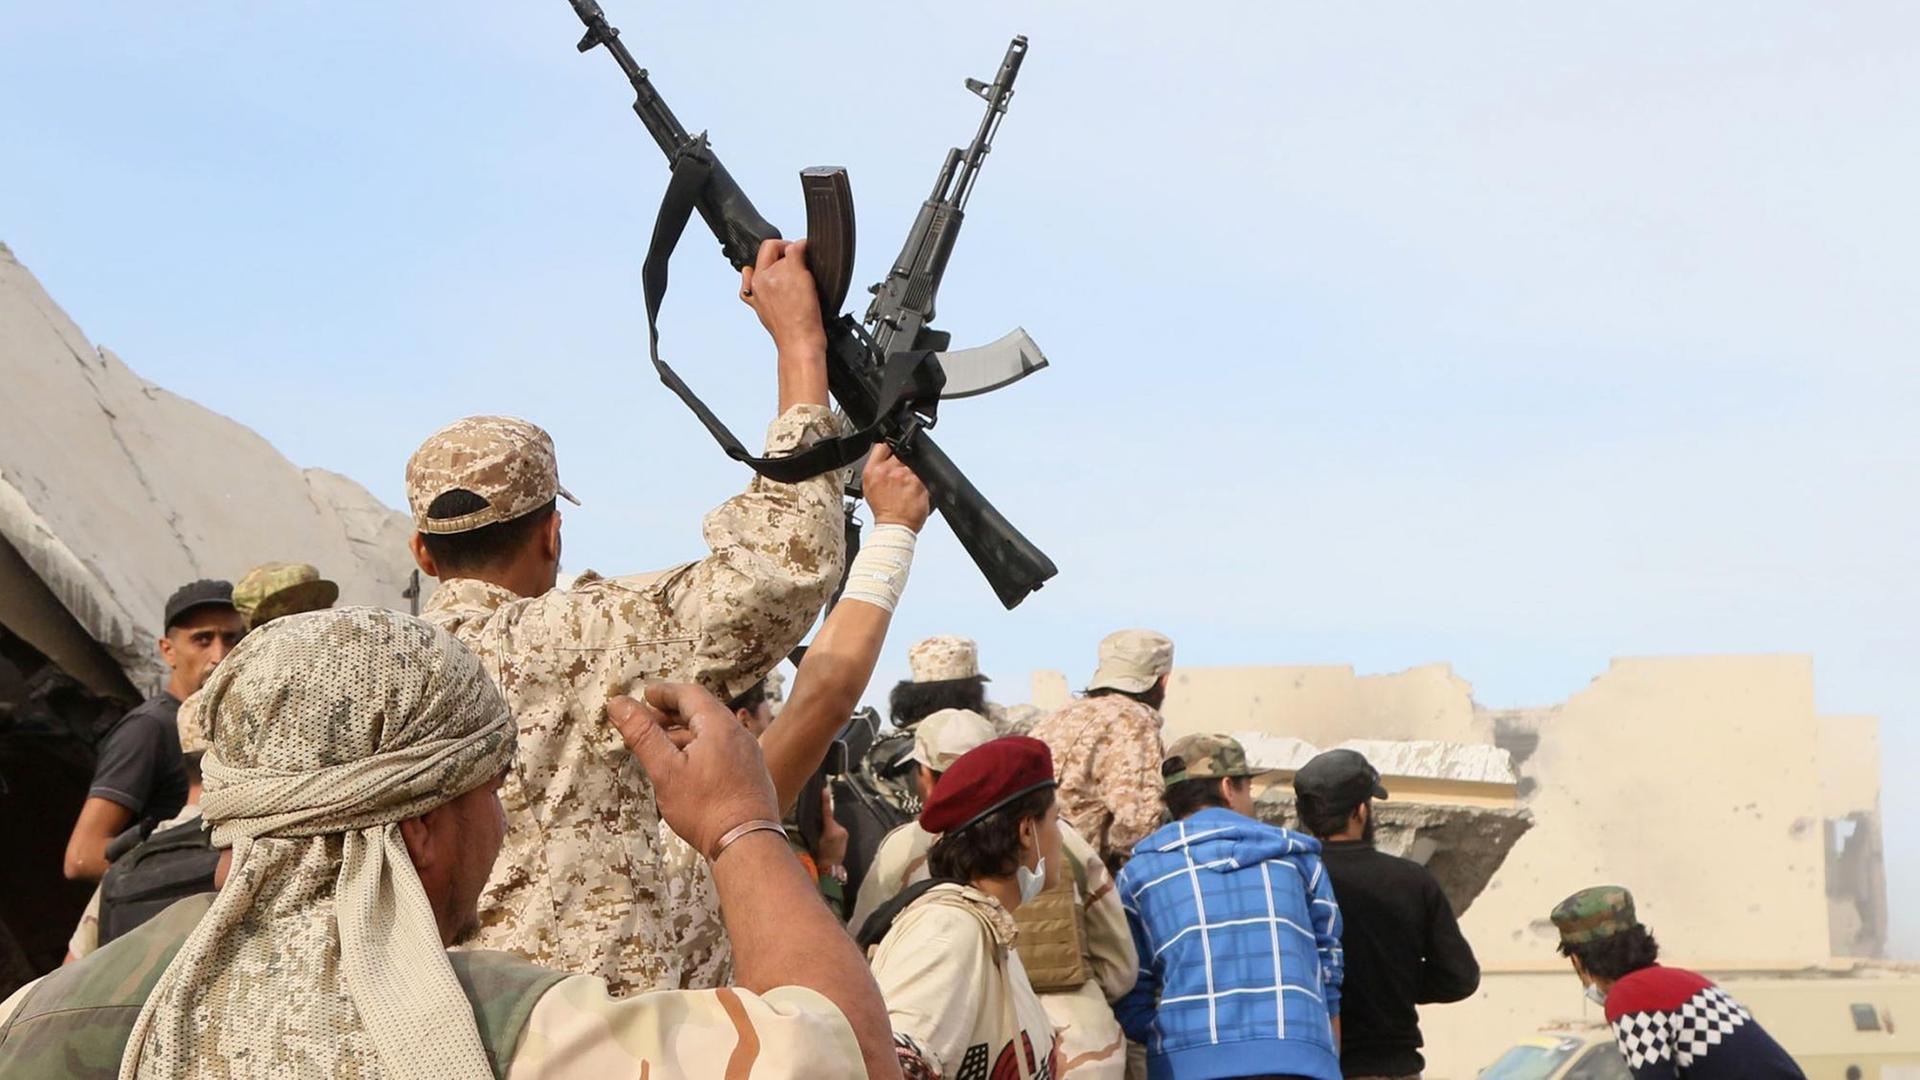 Mitglieder der regierungstreuen Truppen in Libyen schwingen triumphierend ihre Waffen.